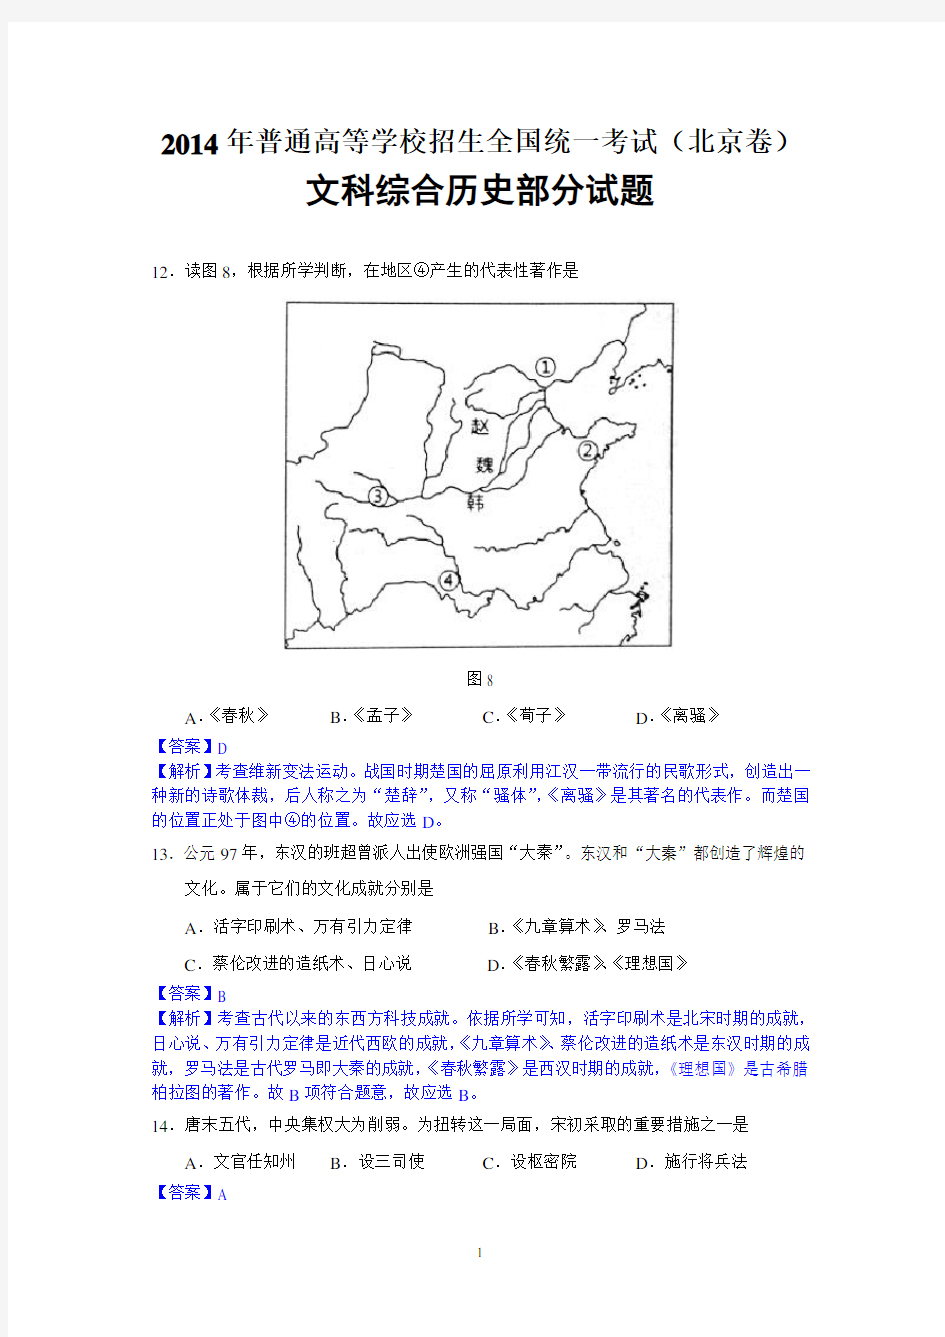 2014年高考真题(北京卷)解析版